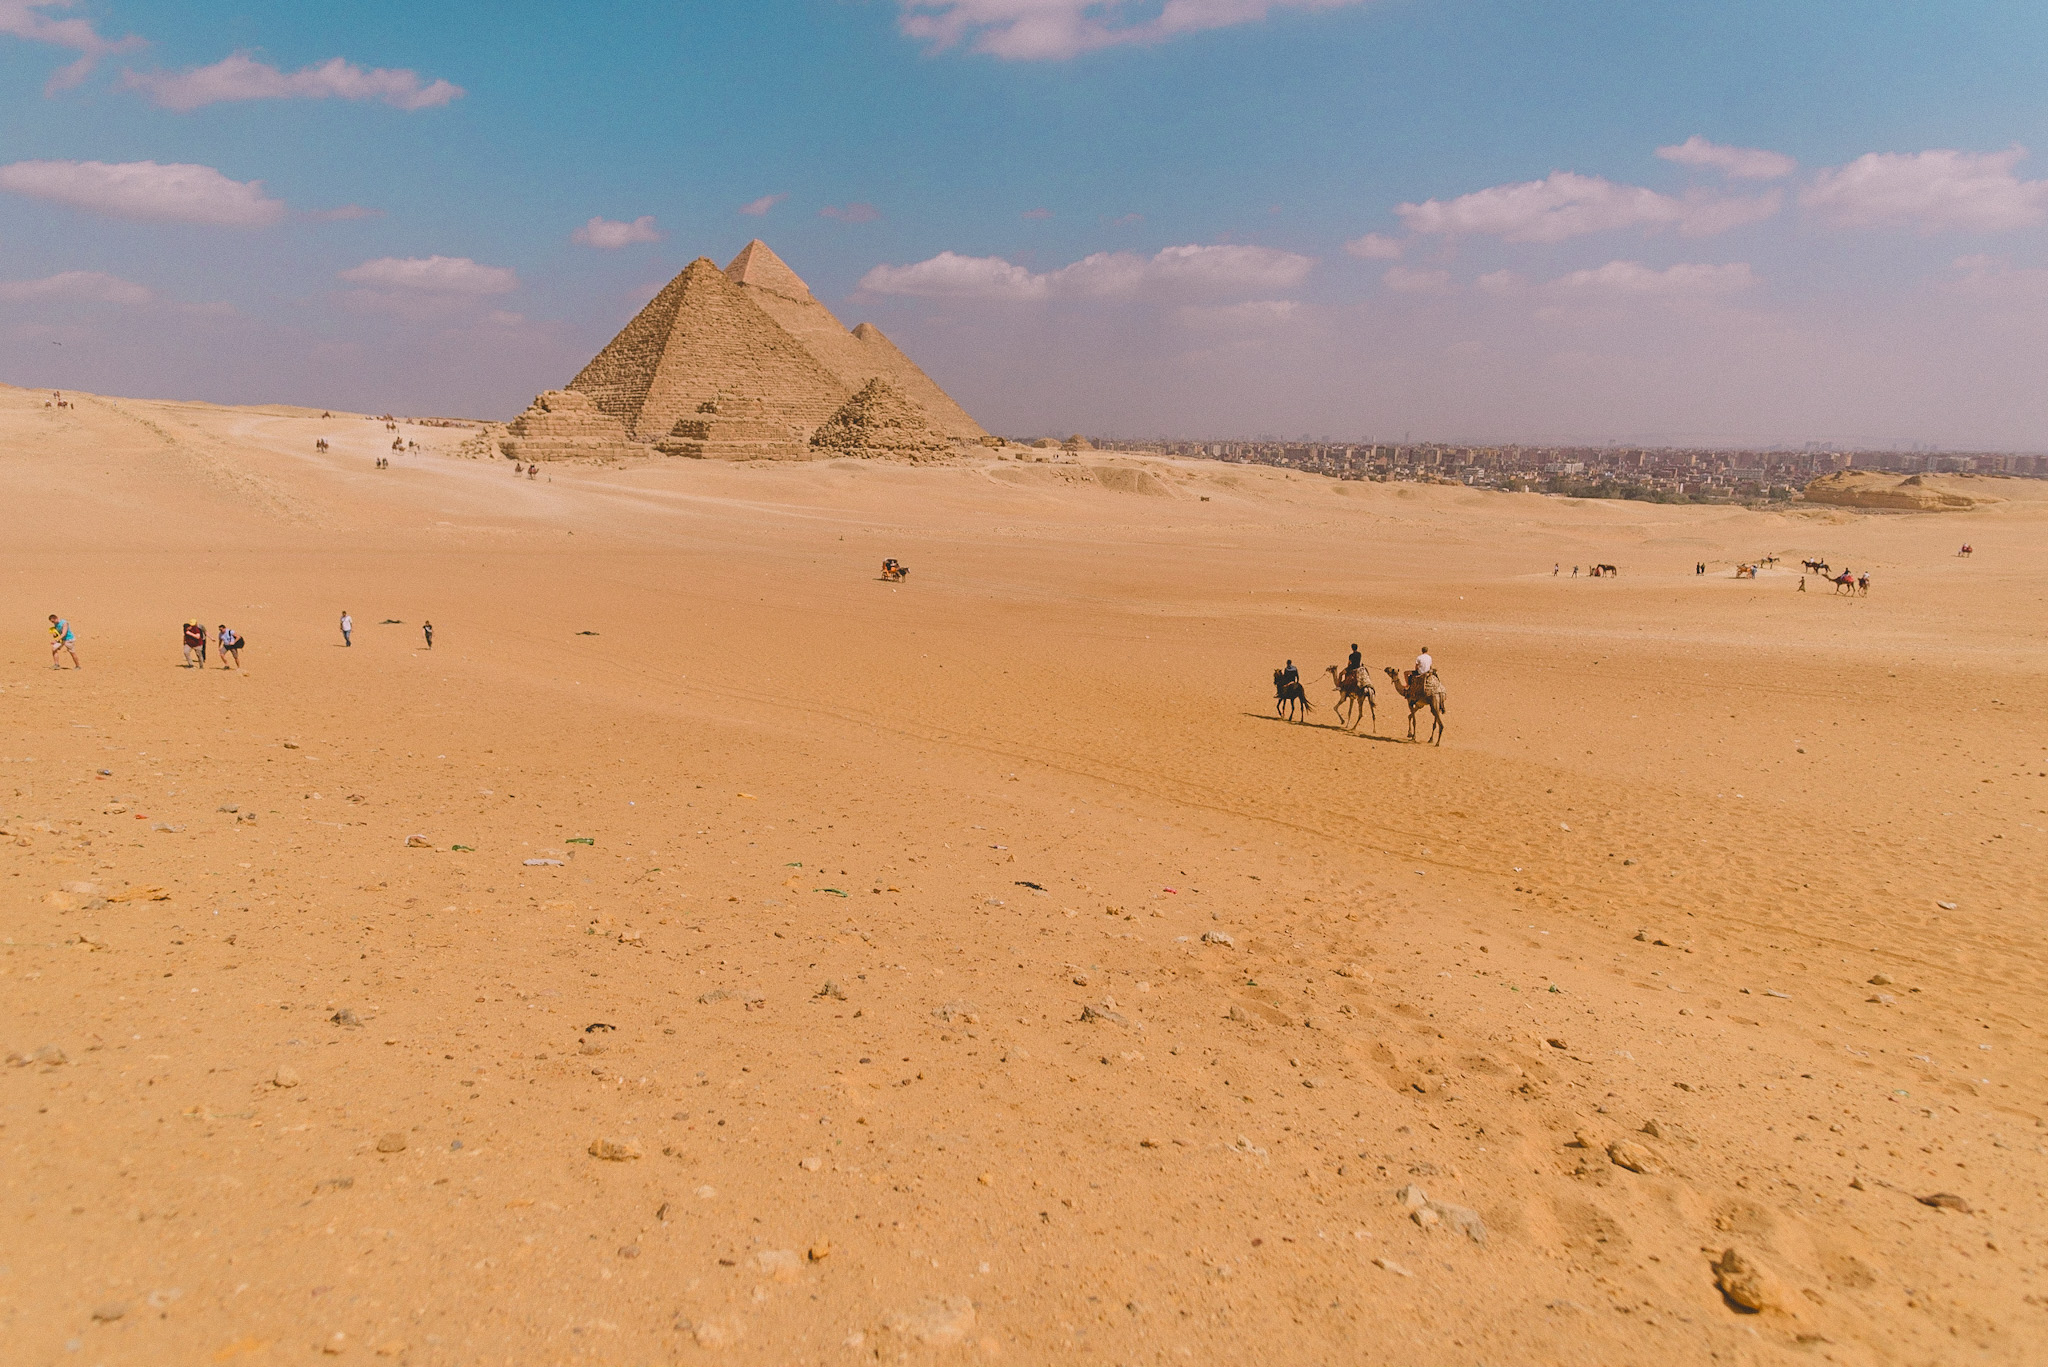 Le site de Gizeh, grandes pyramides d'Egypte